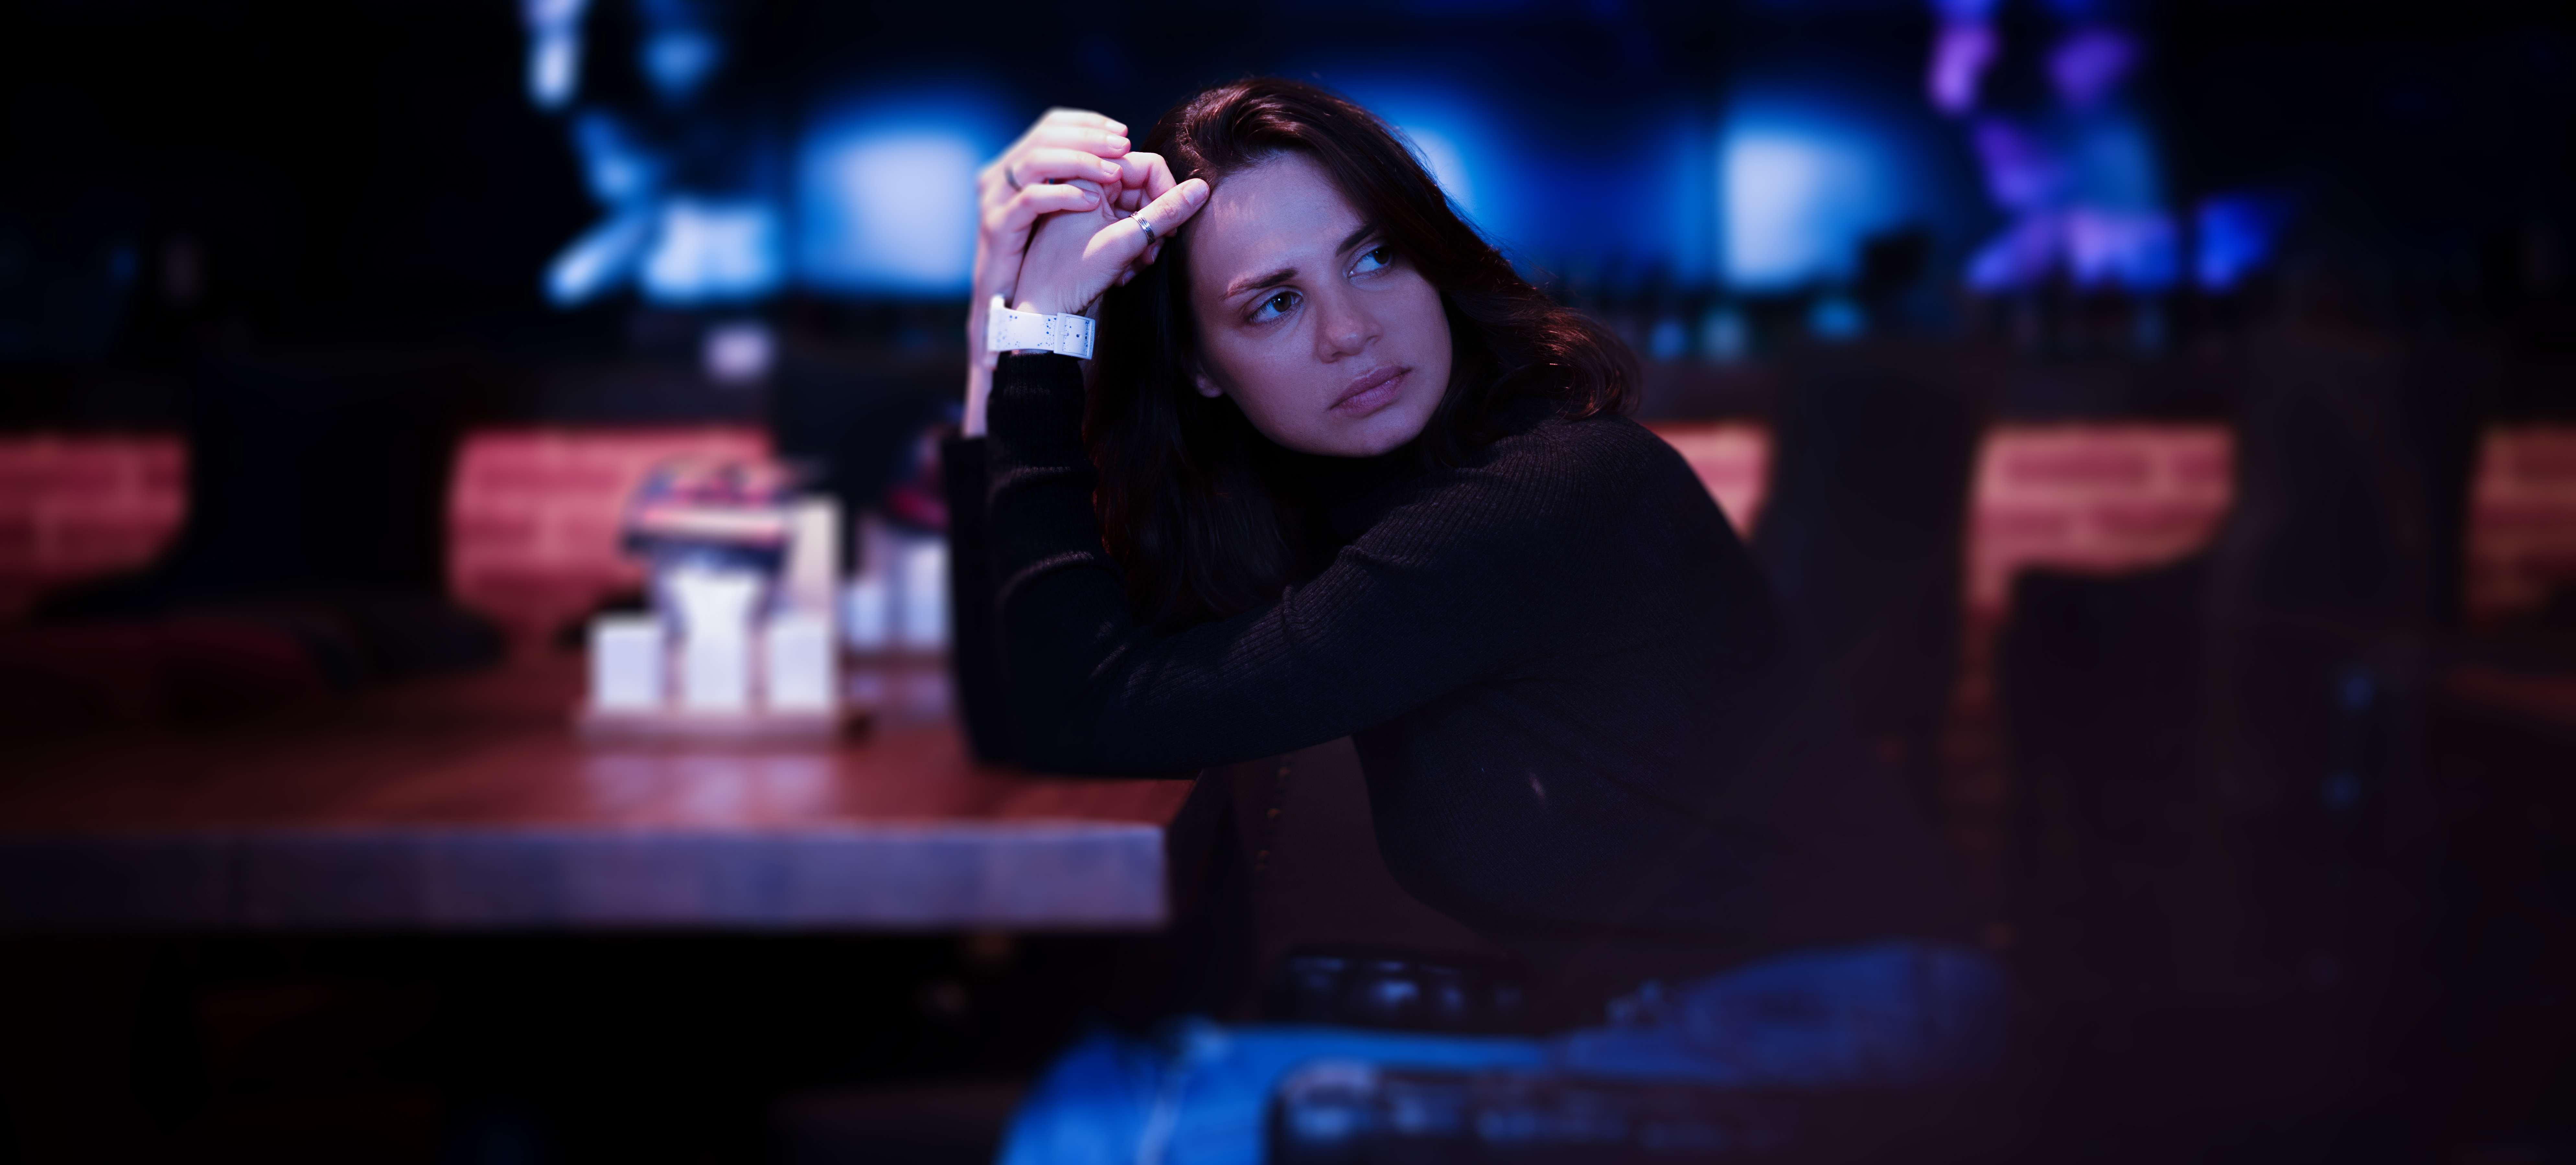 Joven seria y triste sentada sola en un restaurante nocturno. | Fuente: Shutterstock